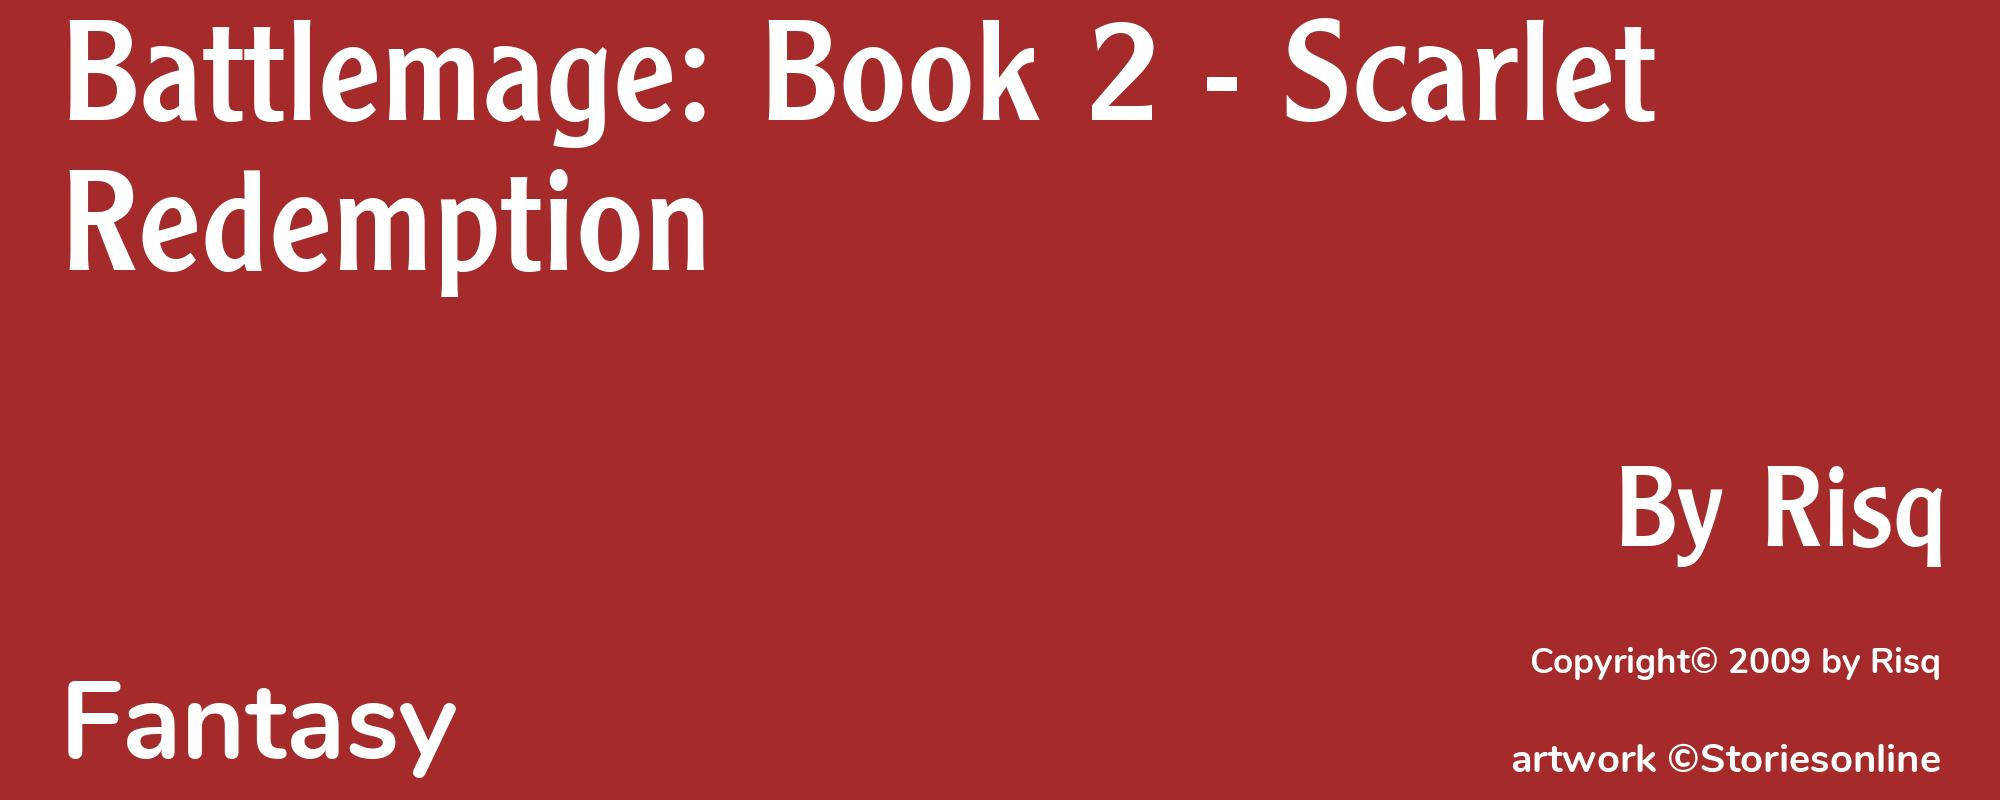 Battlemage: Book 2 - Scarlet Redemption - Cover